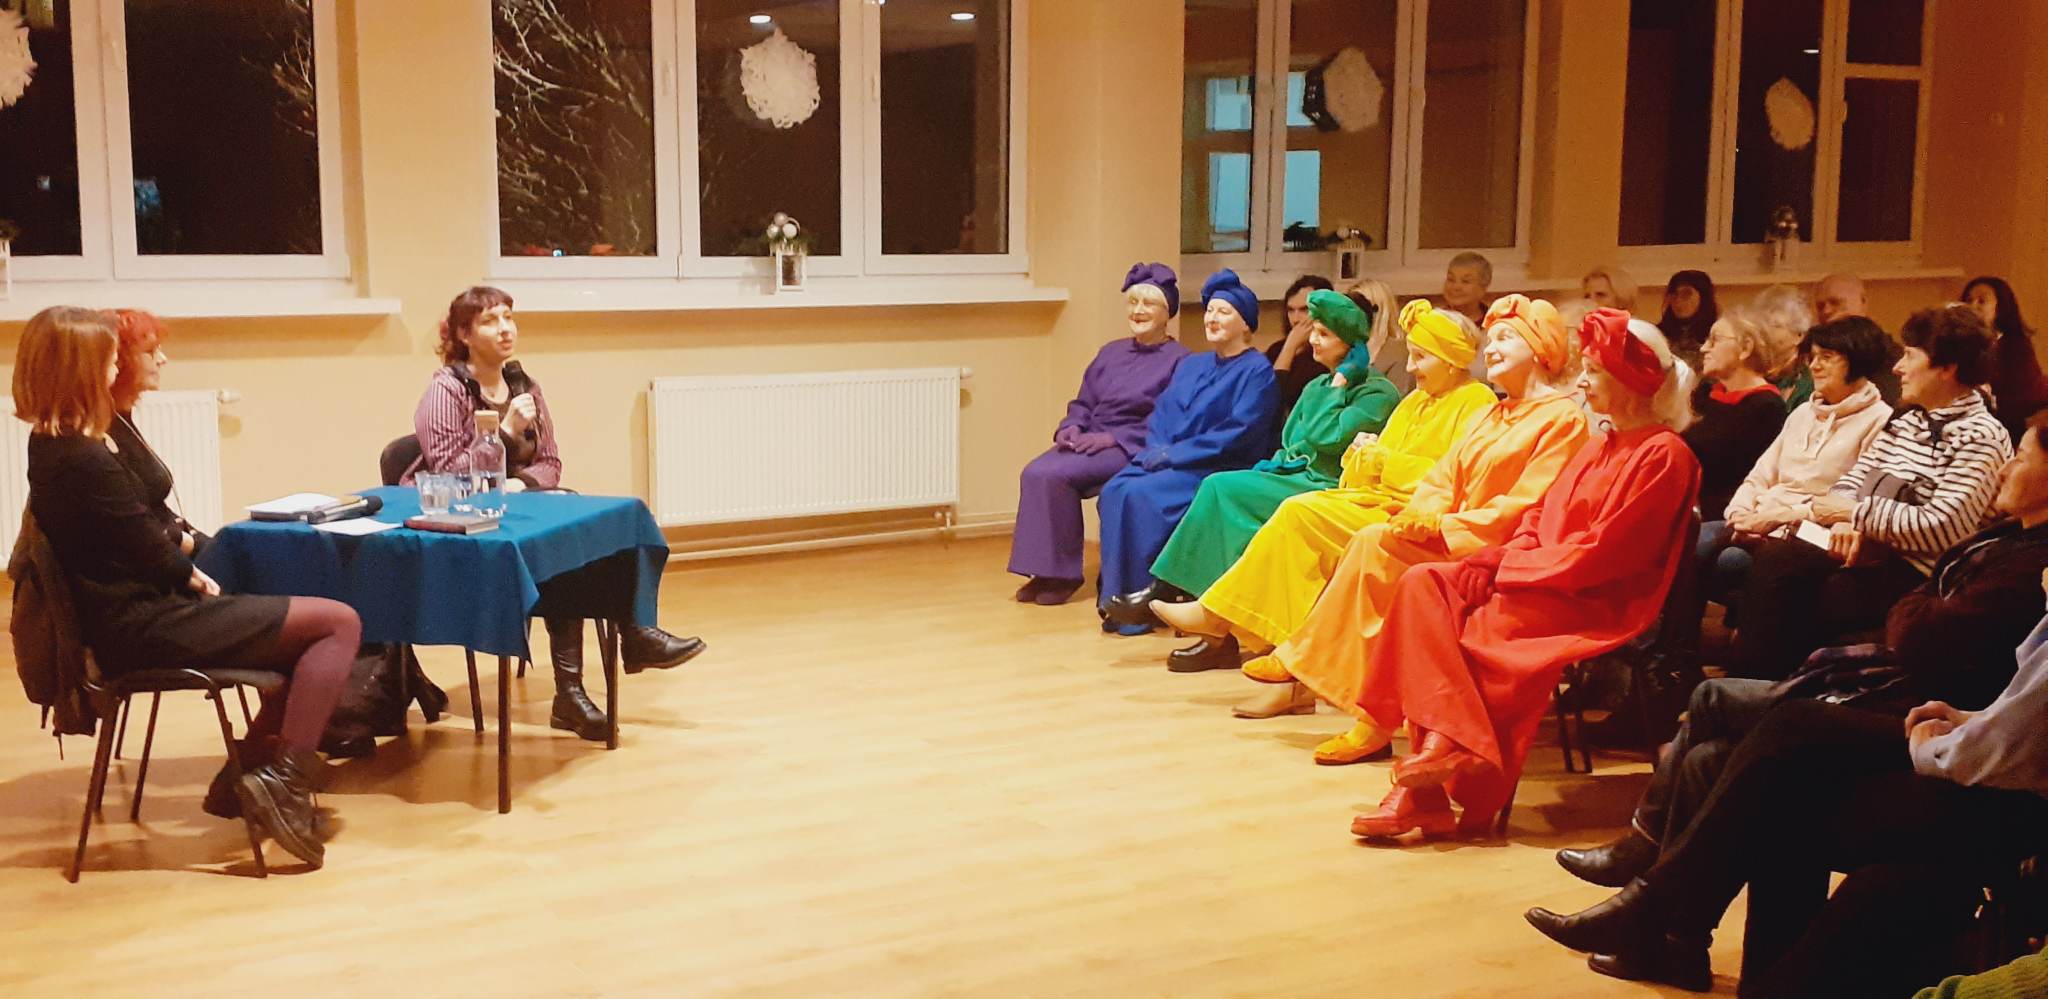 Zdjęcie przedstawia siedzących ludzi w sali, przy stoliku siedzą trzy kobiety, na przeciwko nich kobiety ubrane w kolory tęczy